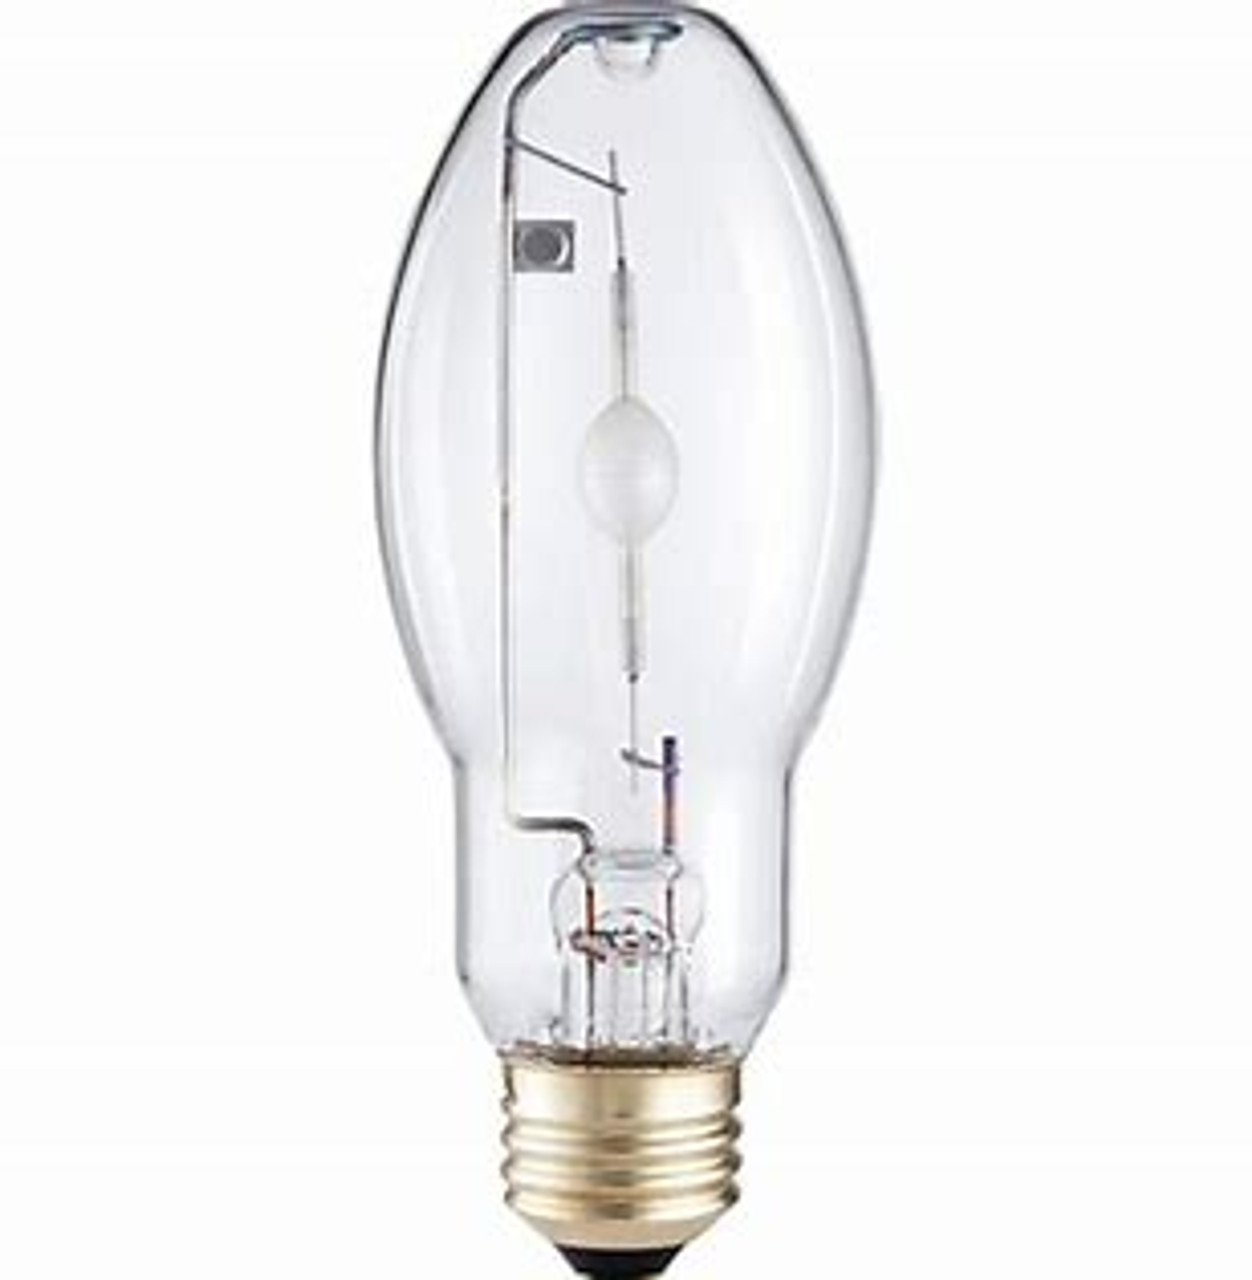 condoom sturen Reinig de vloer Philips 42988-6 100 Watt Metal Halide Lamp